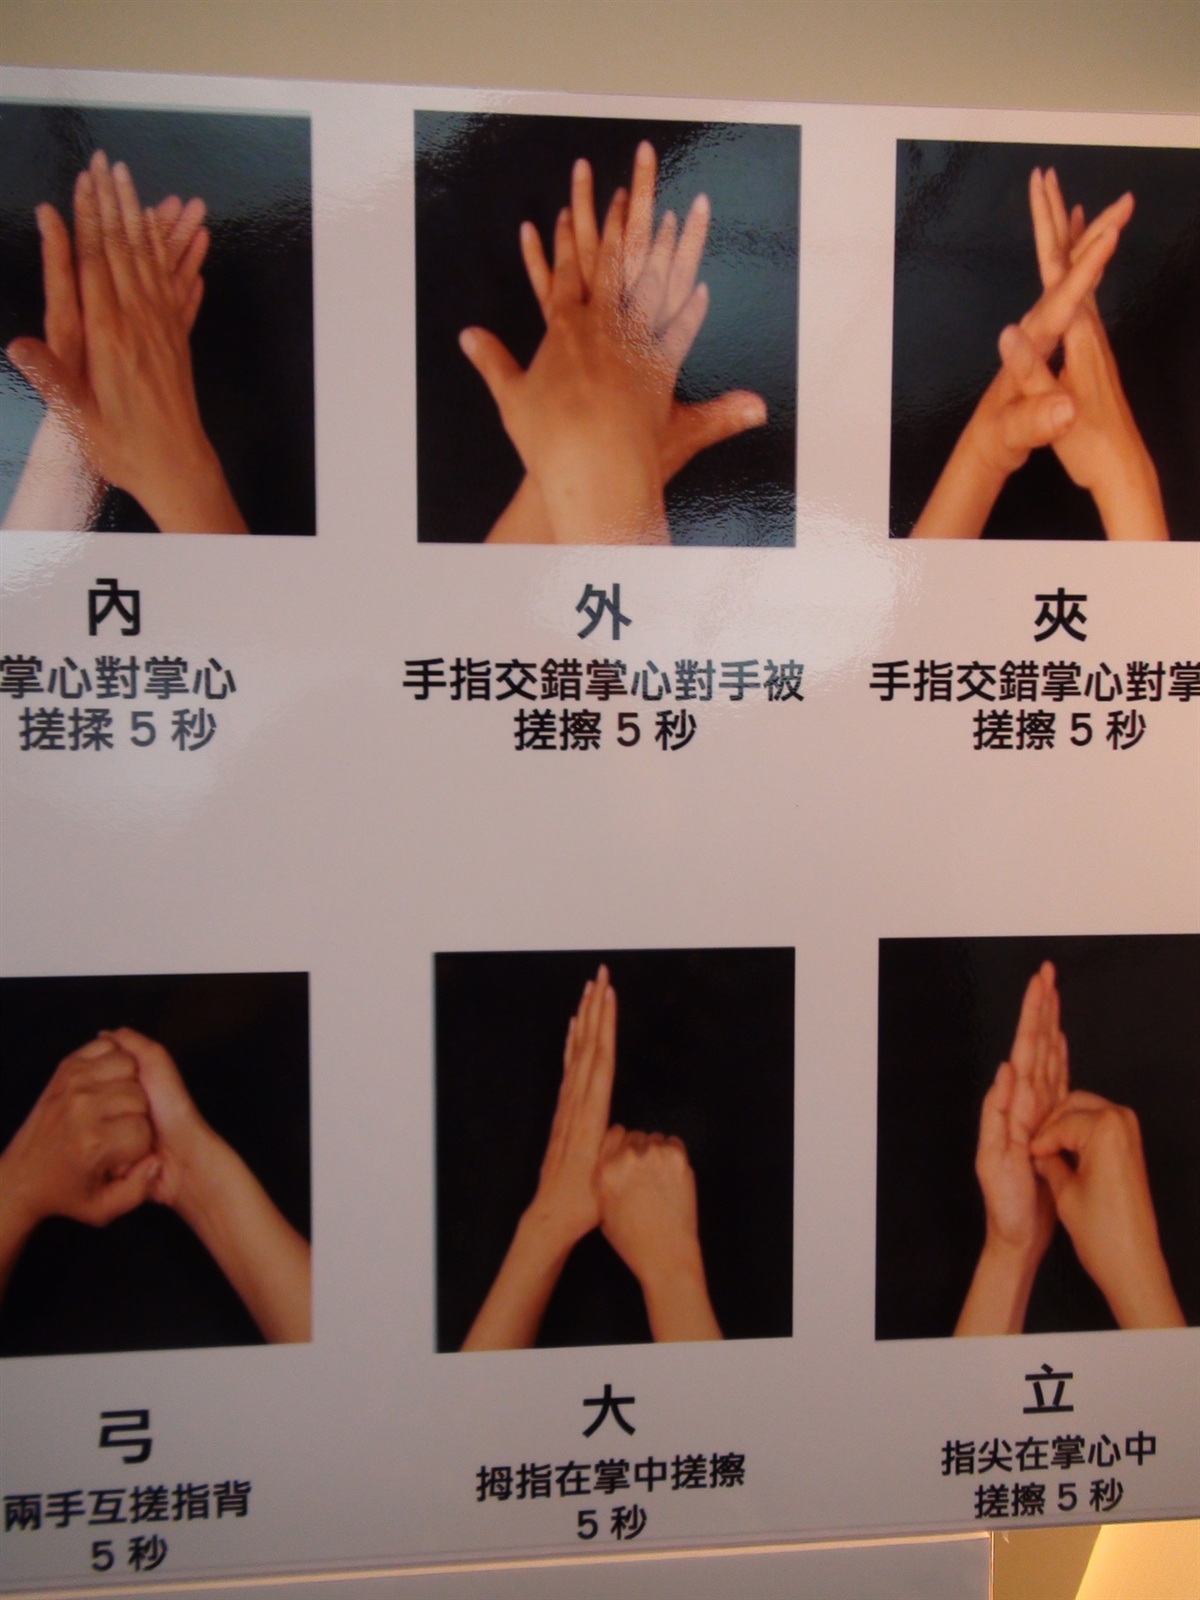 洗手六大步驟，專家建議每次洗手最好洗卅秒以上。 記者謝梅芬／攝影